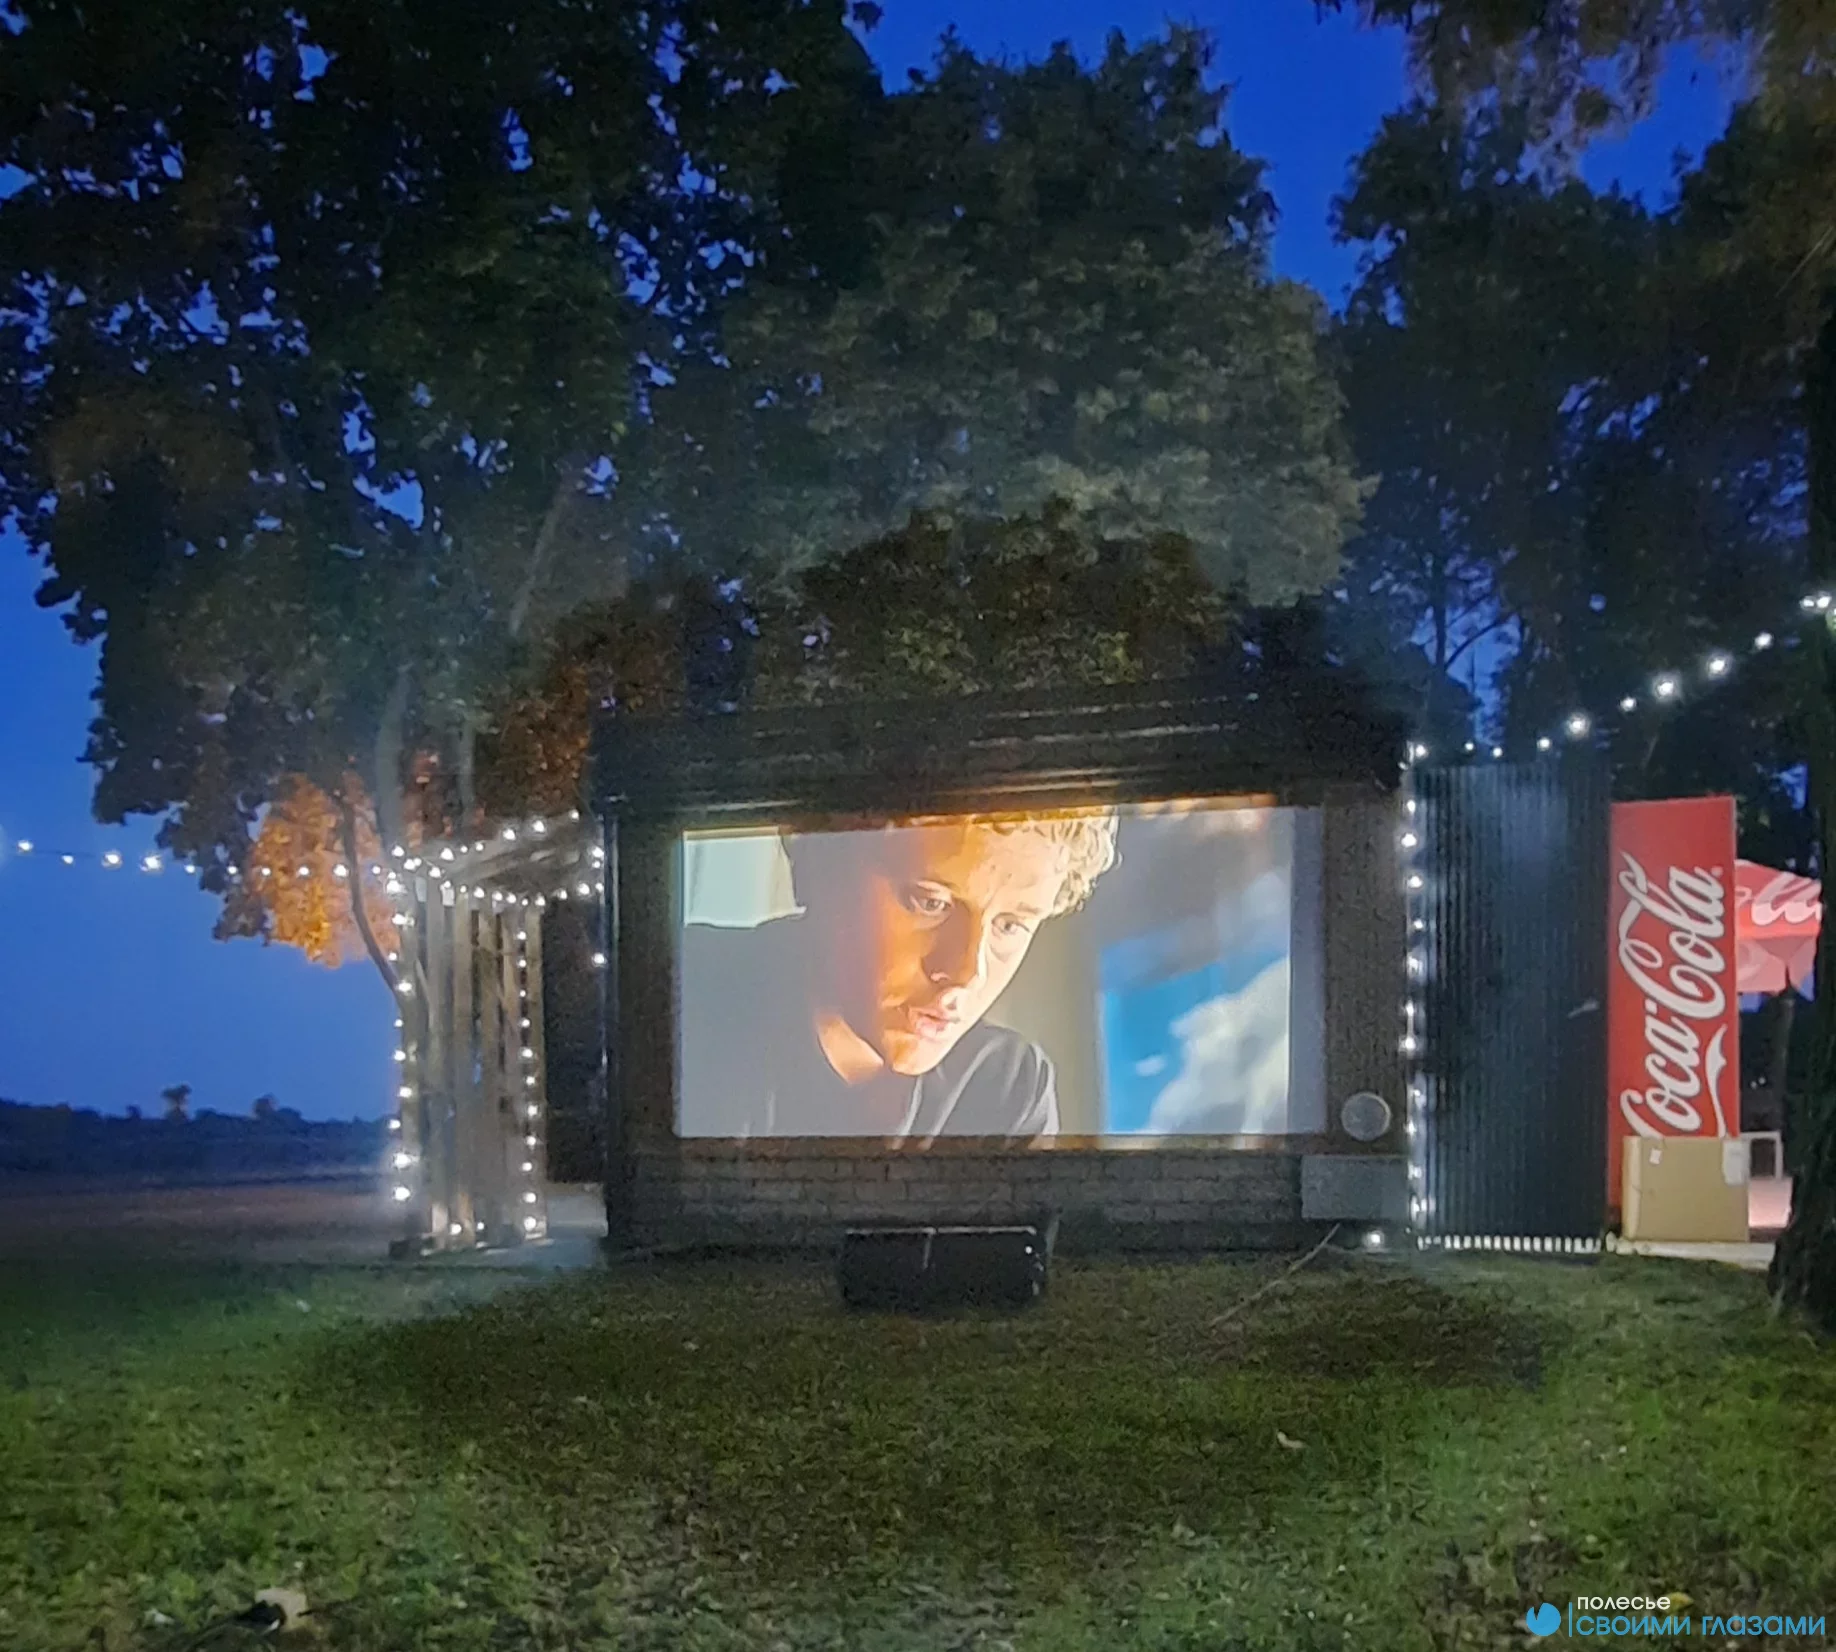 Кино под открытым небом начинают показывать в городском парке